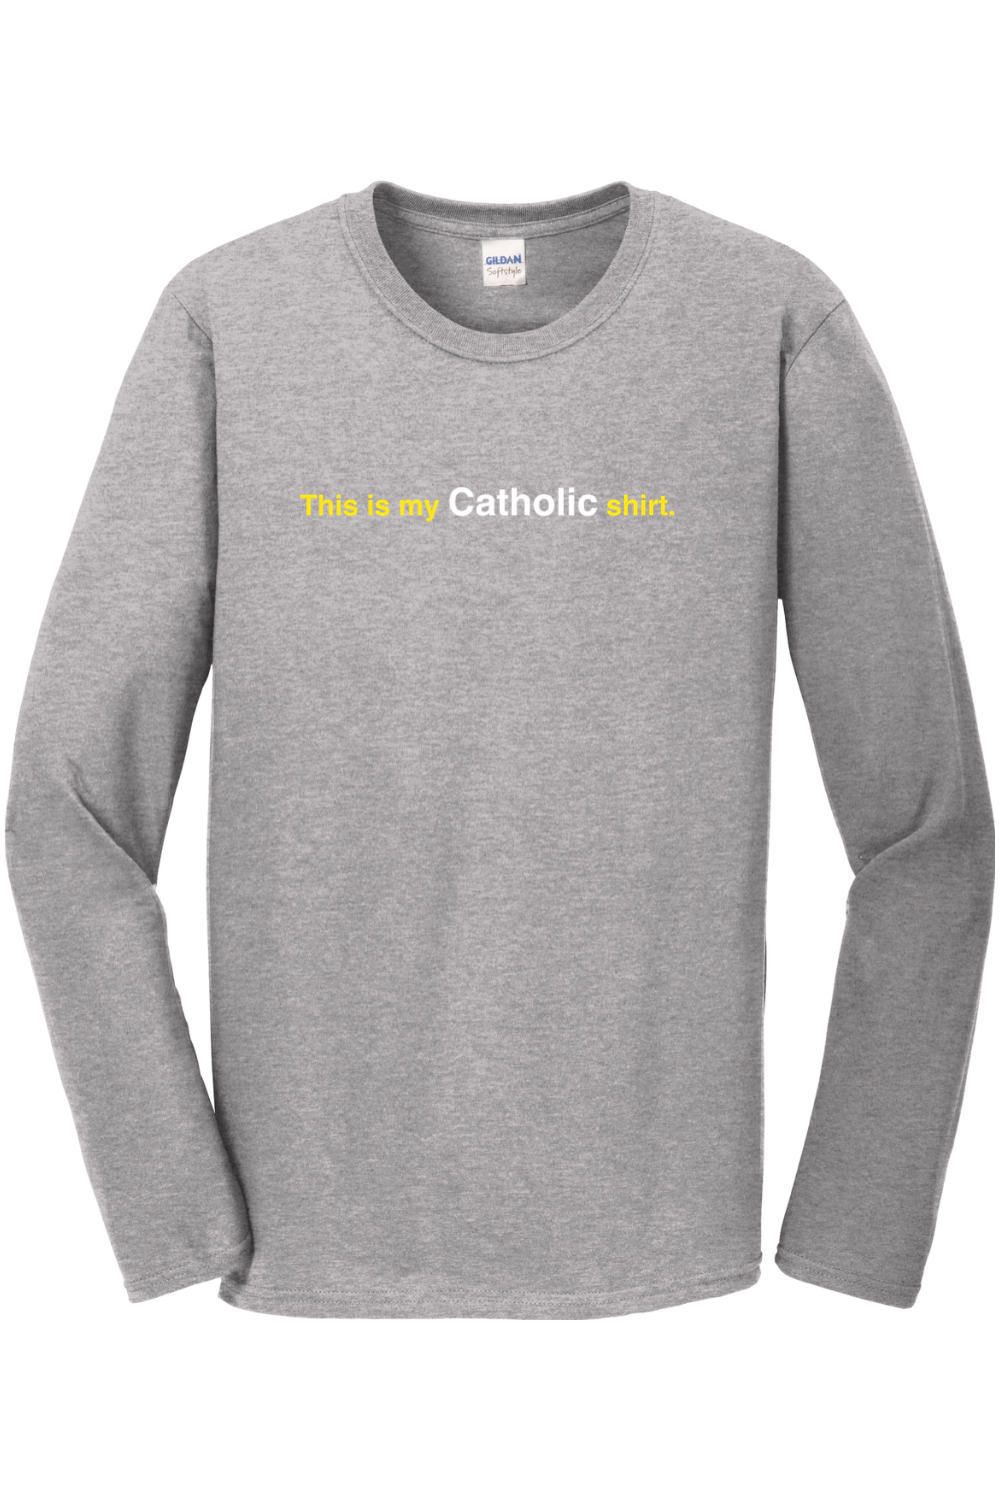 My Catholic Shirt – My Catholic Shirt Long Sleeve